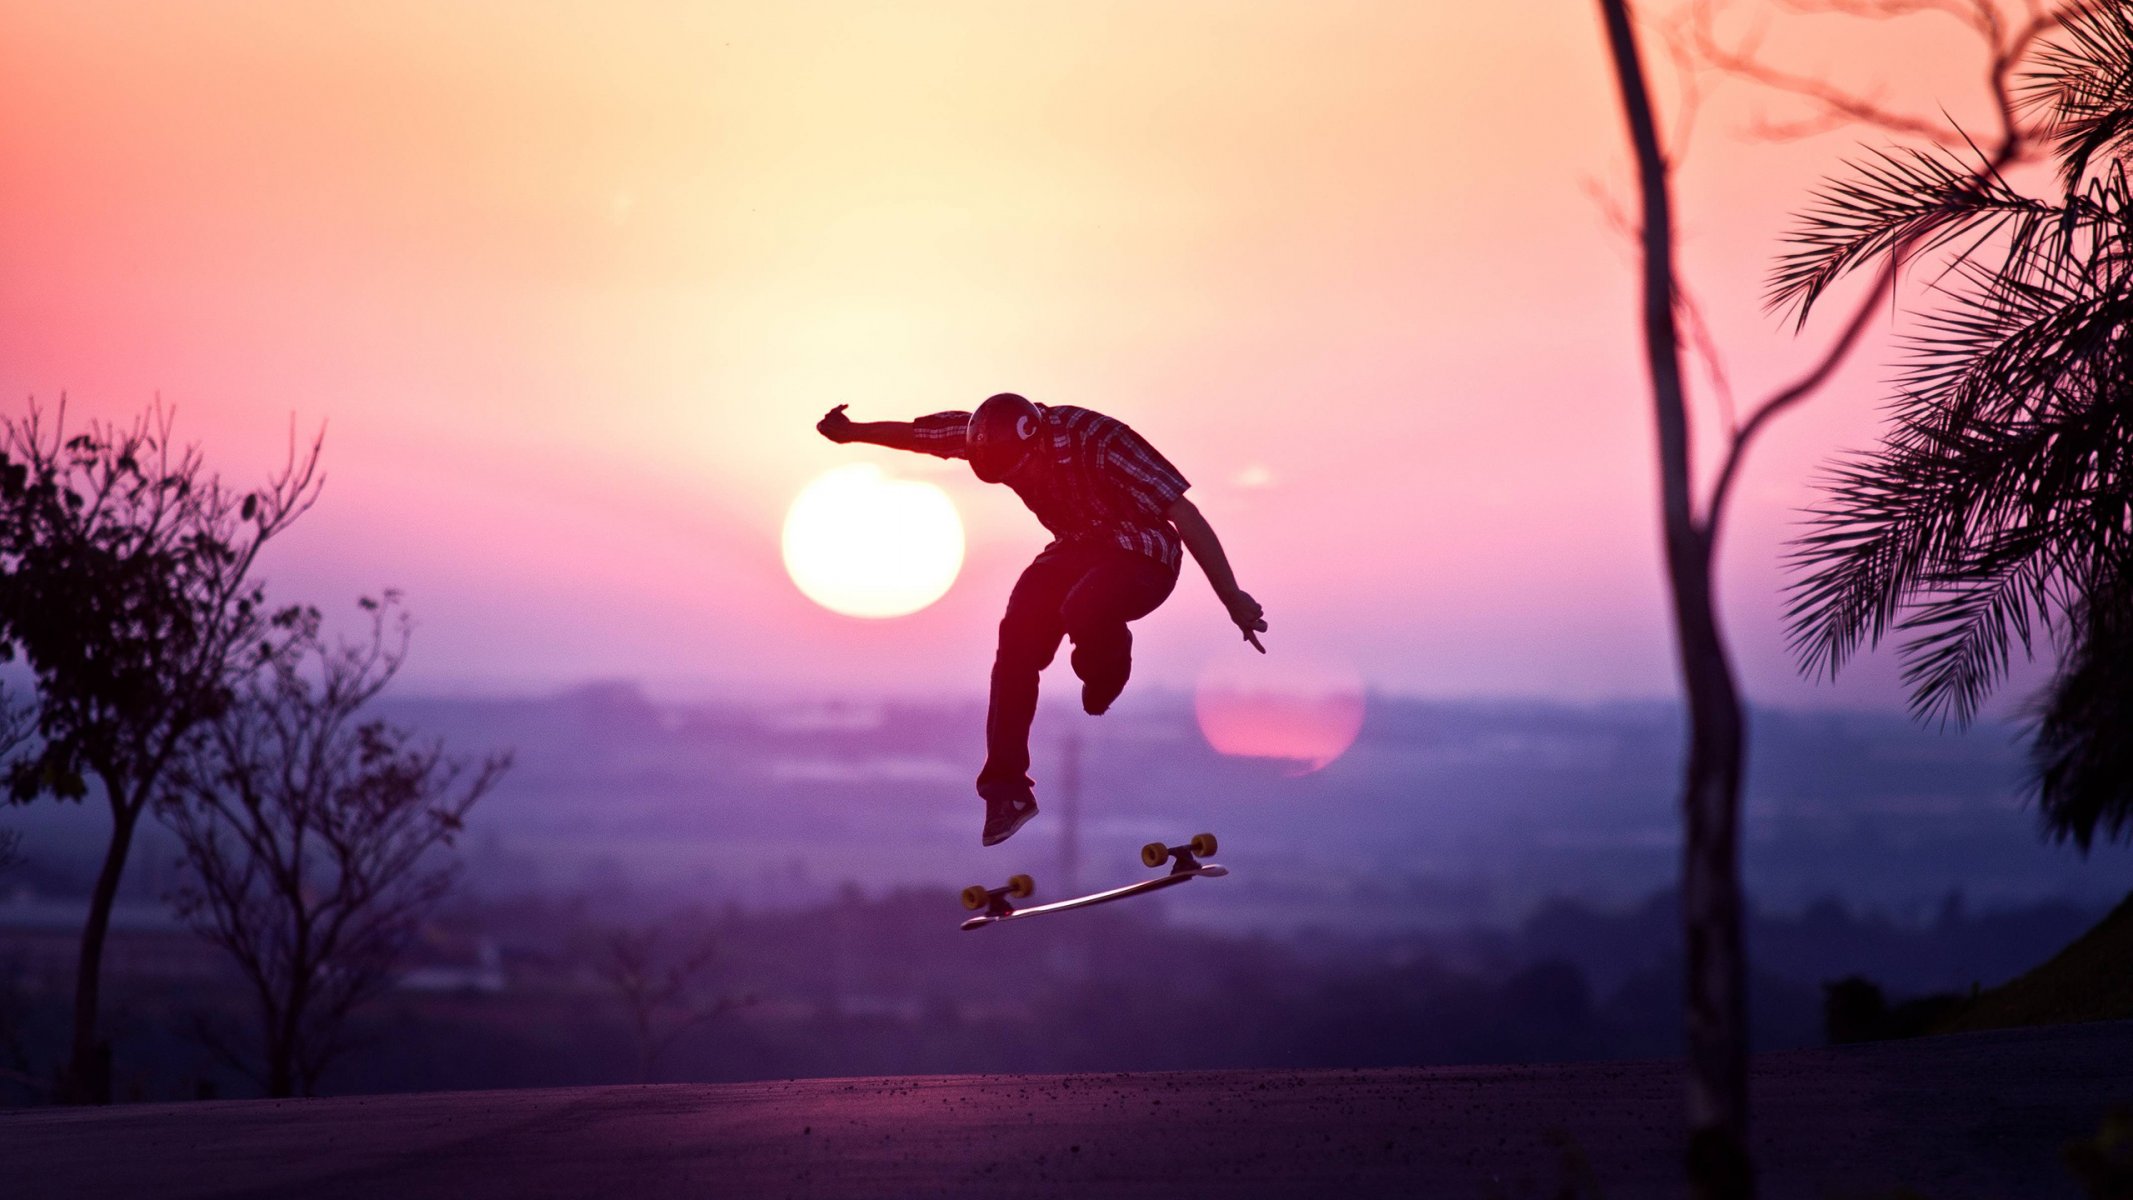 парень шлем скейтборд прыжок солнце закат HD обои для ноутбука